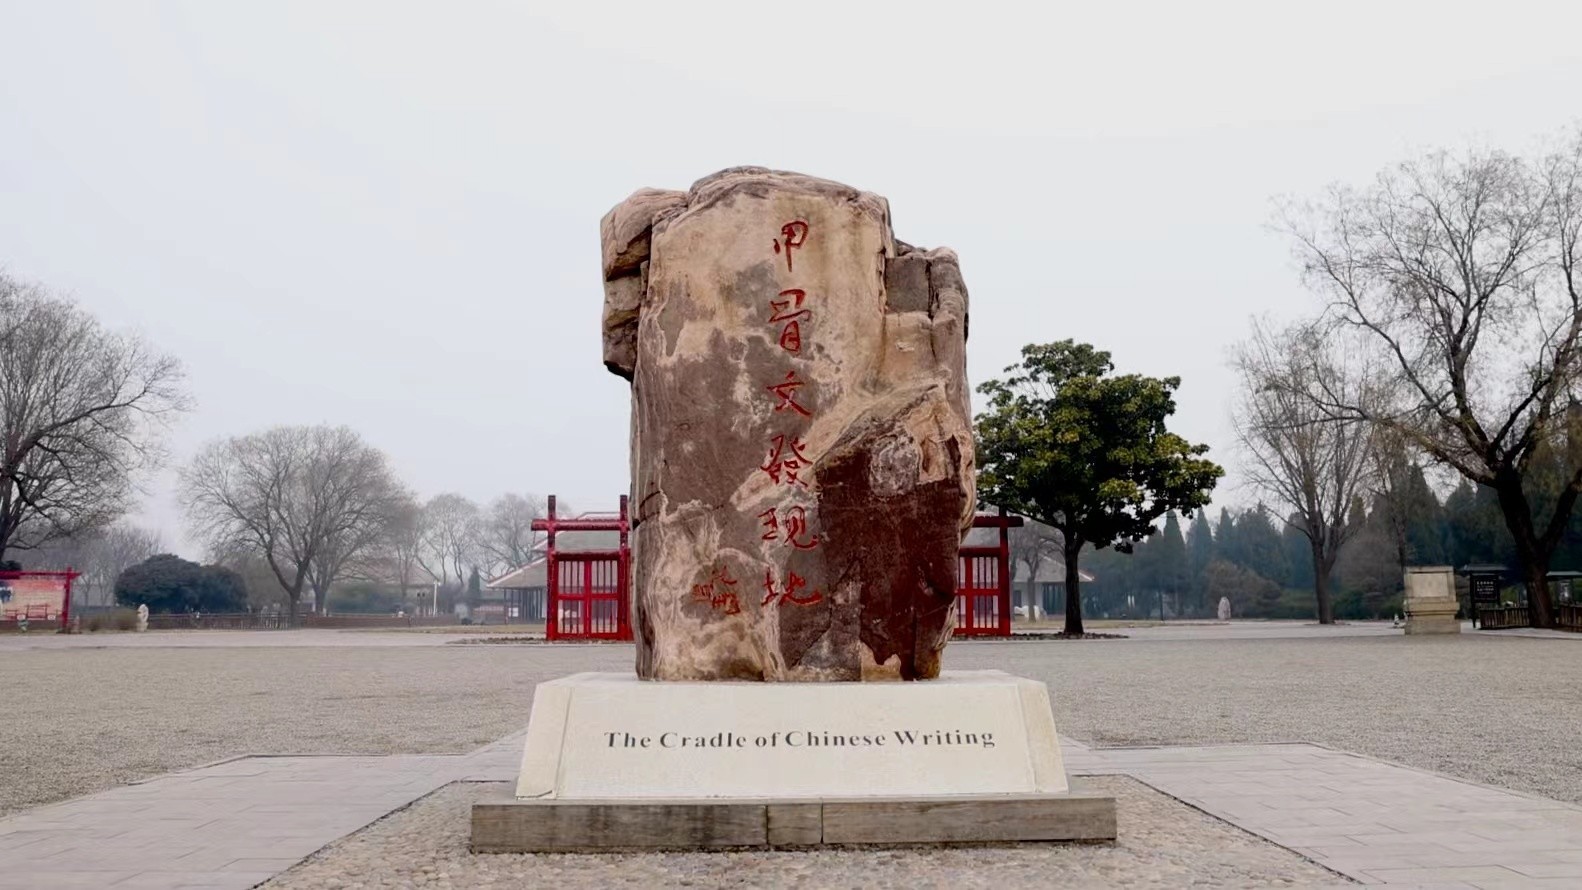 行走河南 读懂中国丨走进殷墟 聆听“中国最早博物馆”的故事